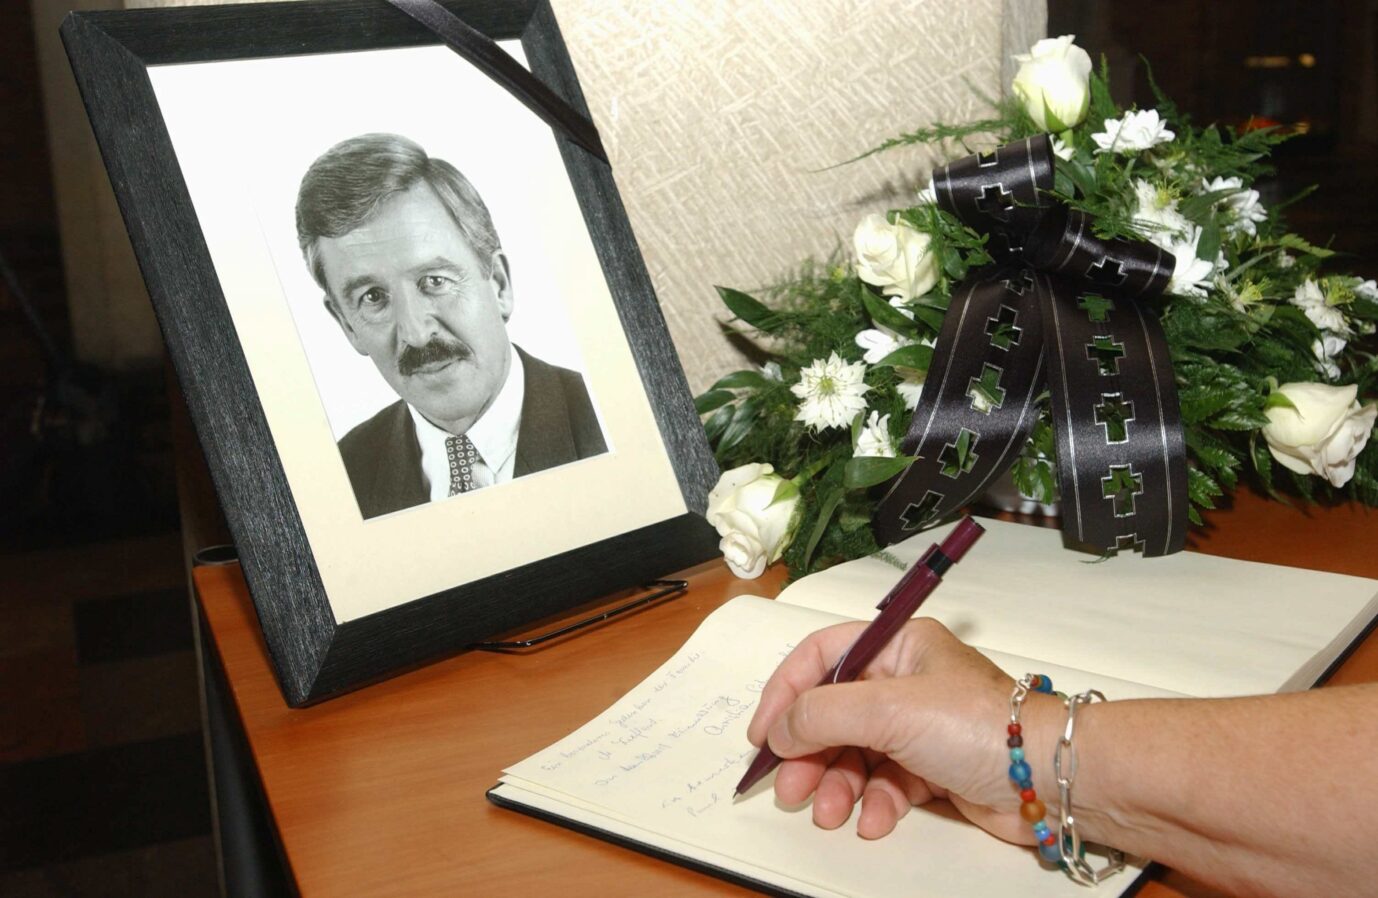 Ein Foto des 2003 verstorbenen FDP-Politikers Jürgen Möllemann, daneben ein Blumenstrauß und ein Kondolenzbuch, wo sich jemand namentlich einträgt.